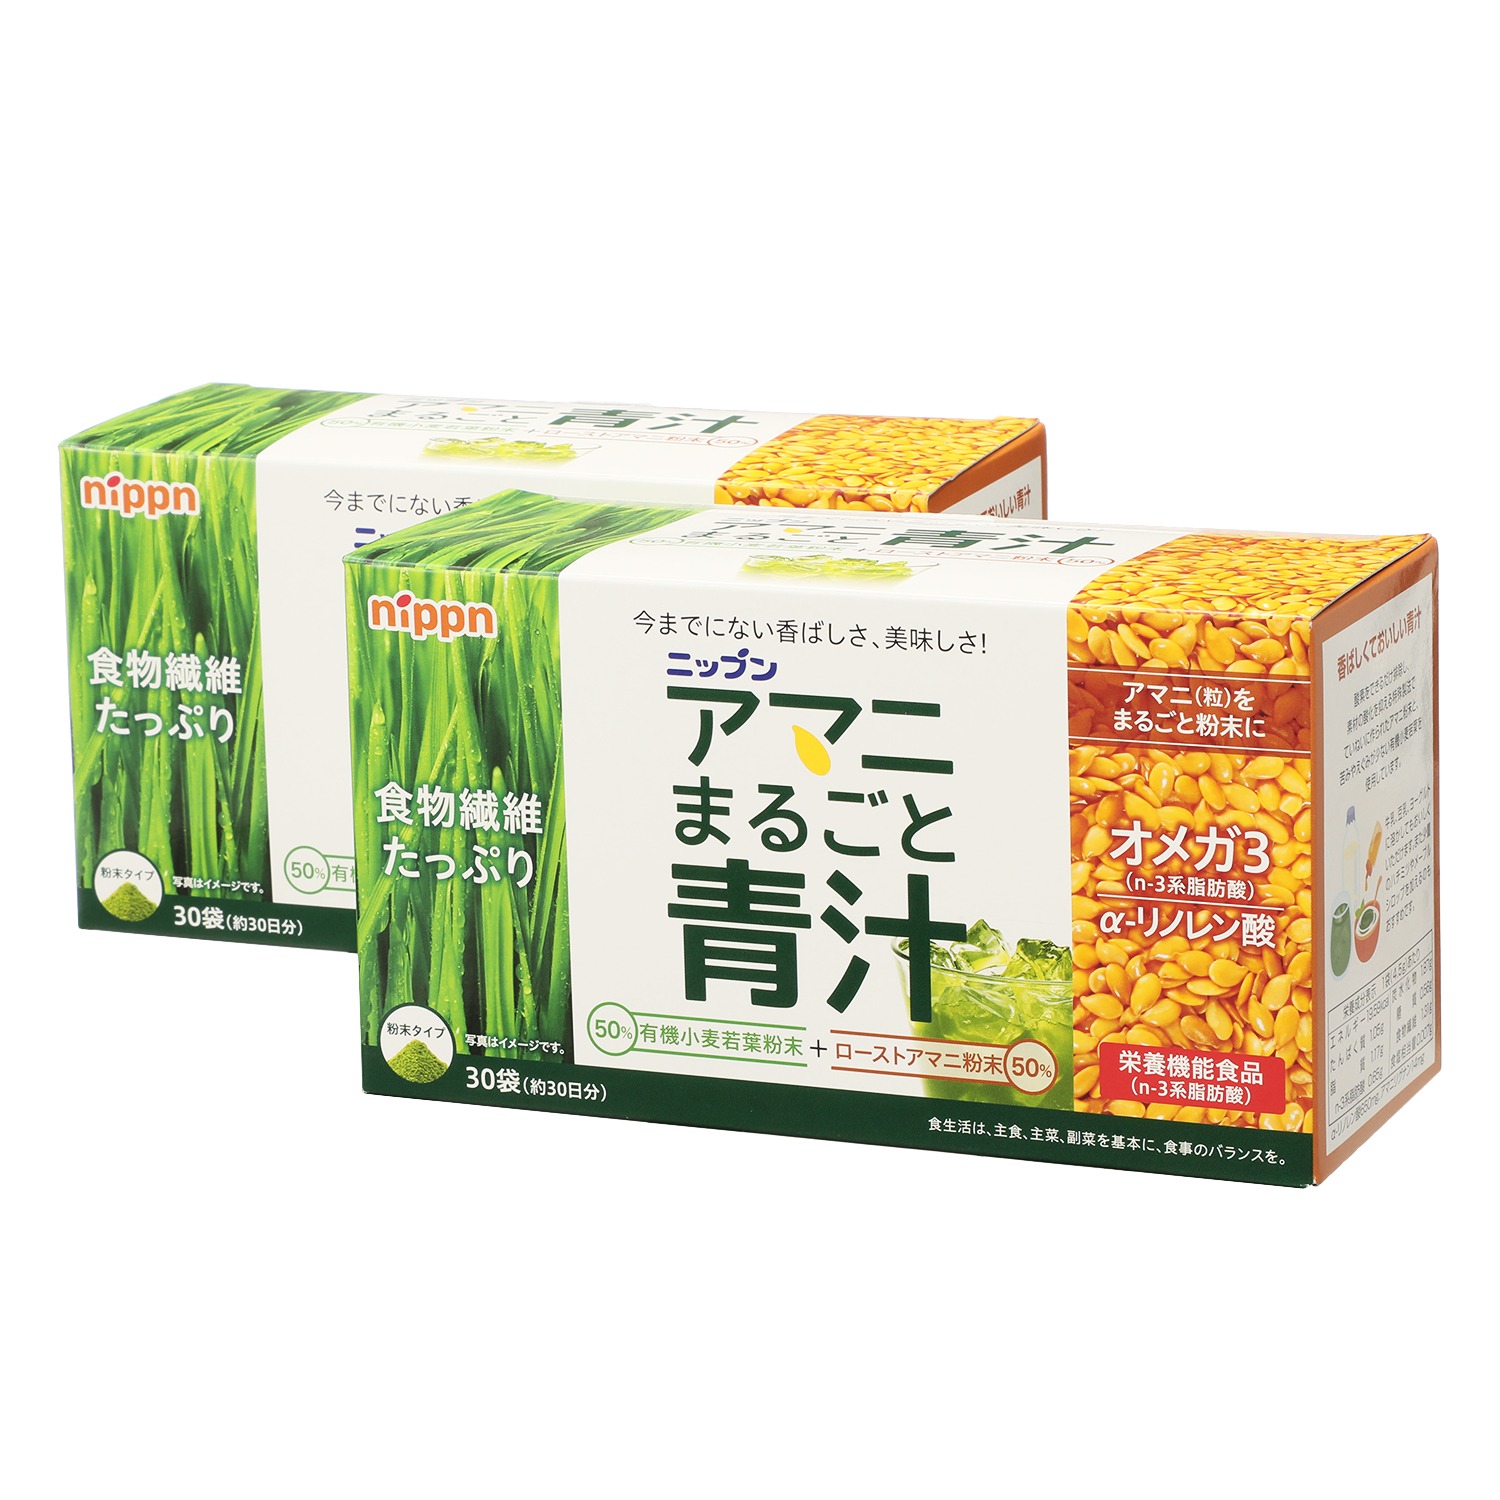 大麦若葉まるごと青汁(３箱セット) 通販